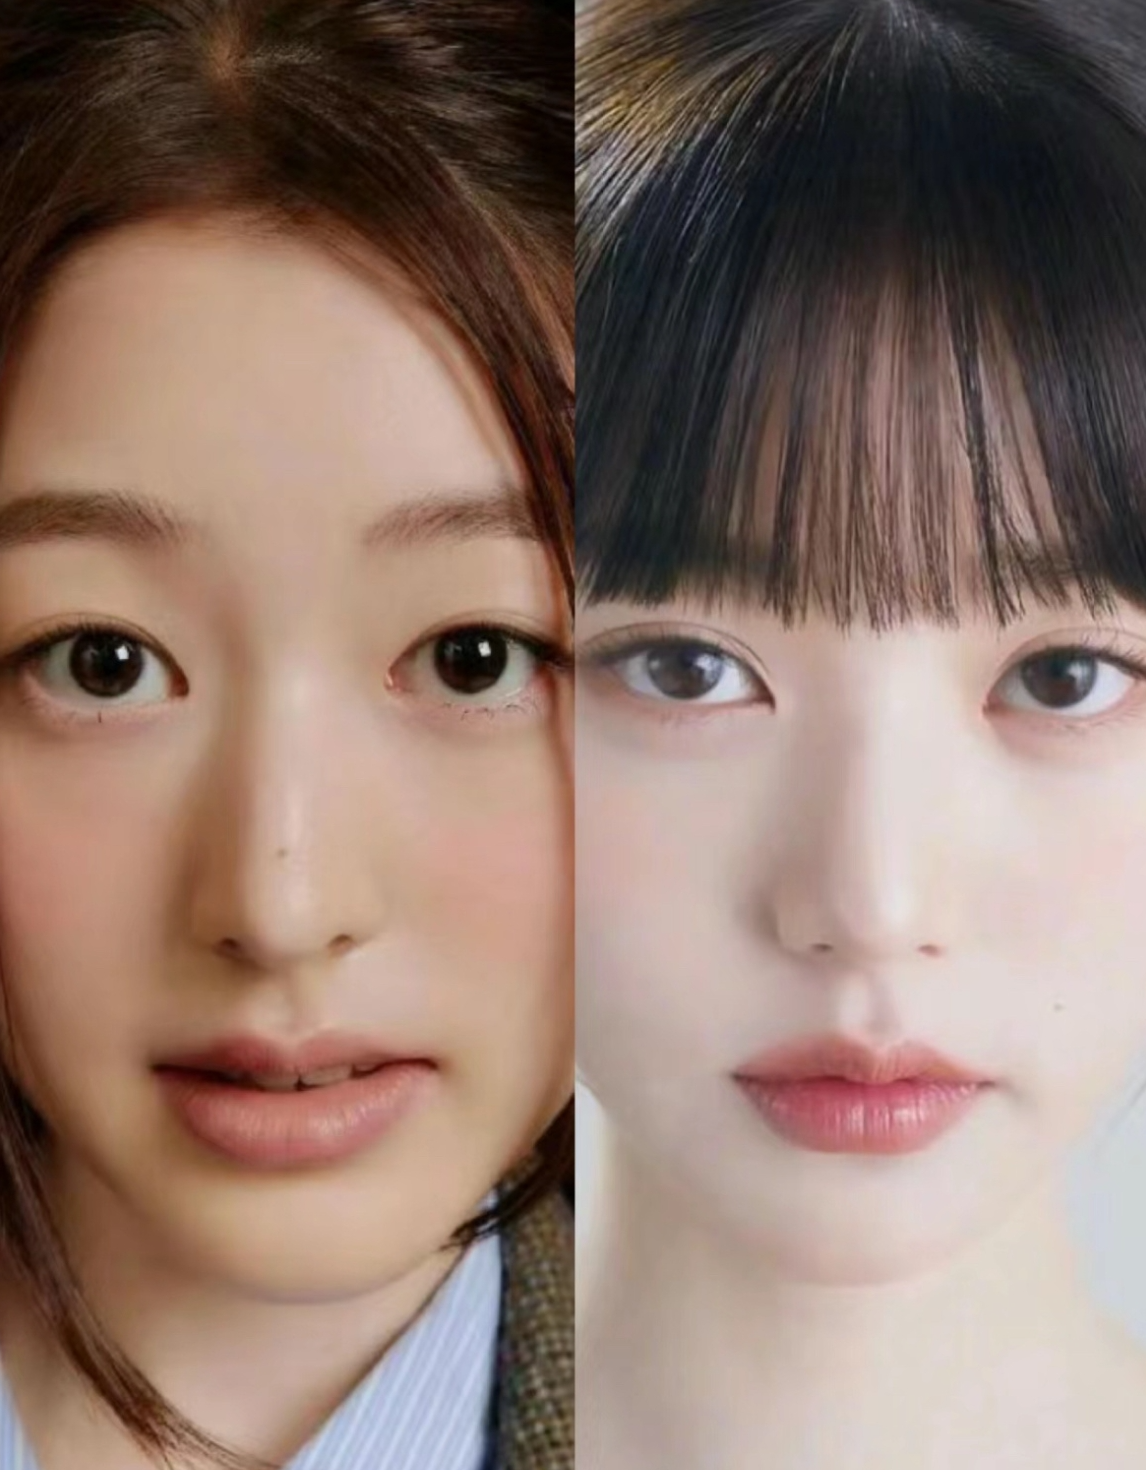 张元英和她姐姐张多雅怼脸对比照片，充分说明表情管理的重要性